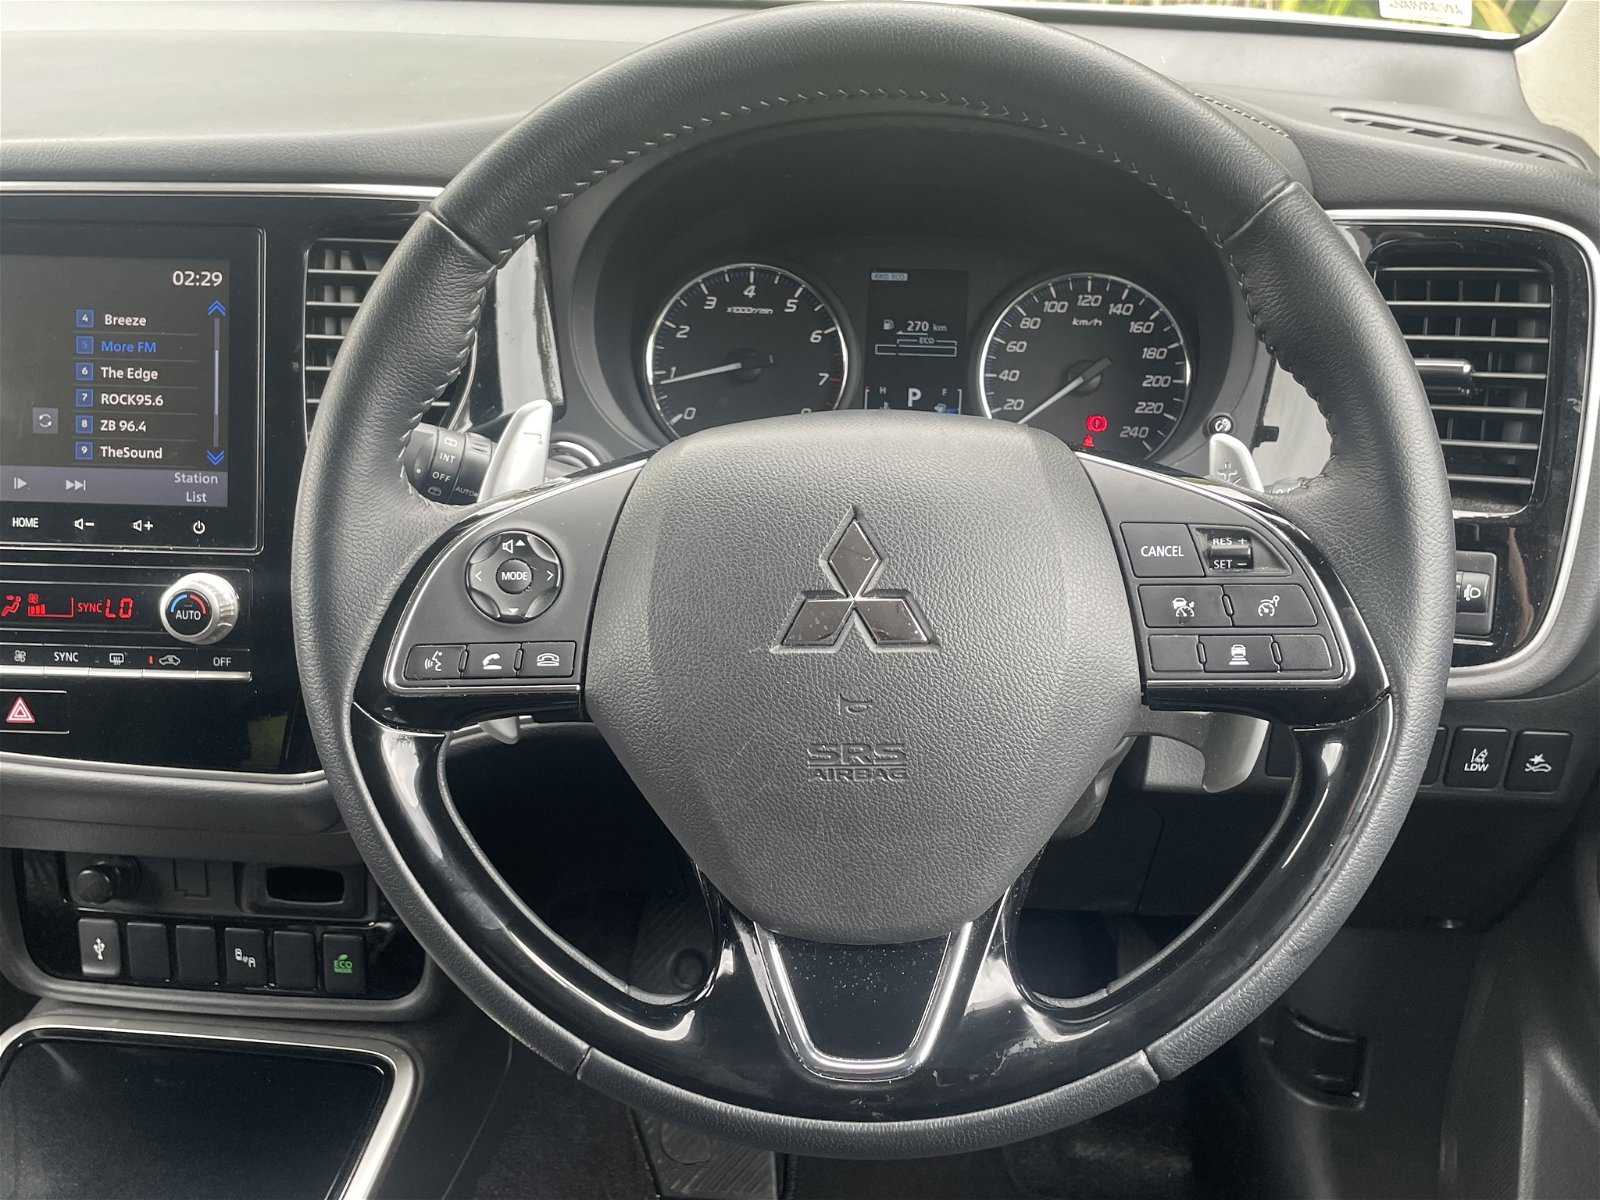 2021 Mitsubishi Outlander XLS 2.4P/4WD/CVT